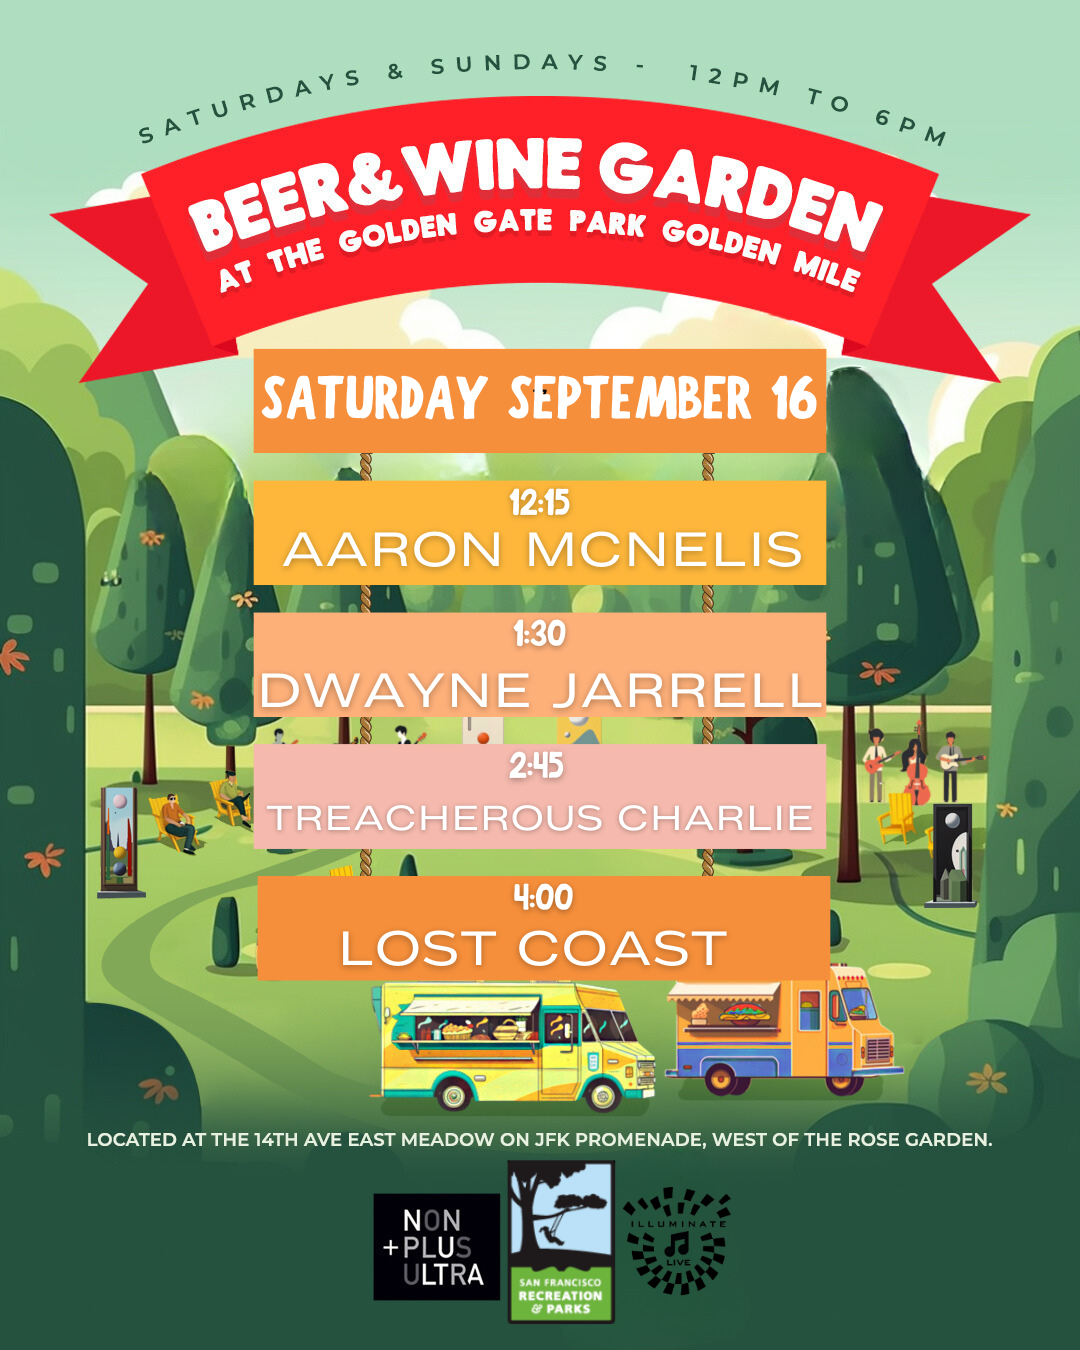 The Golden Mile Beer & Wine Garden